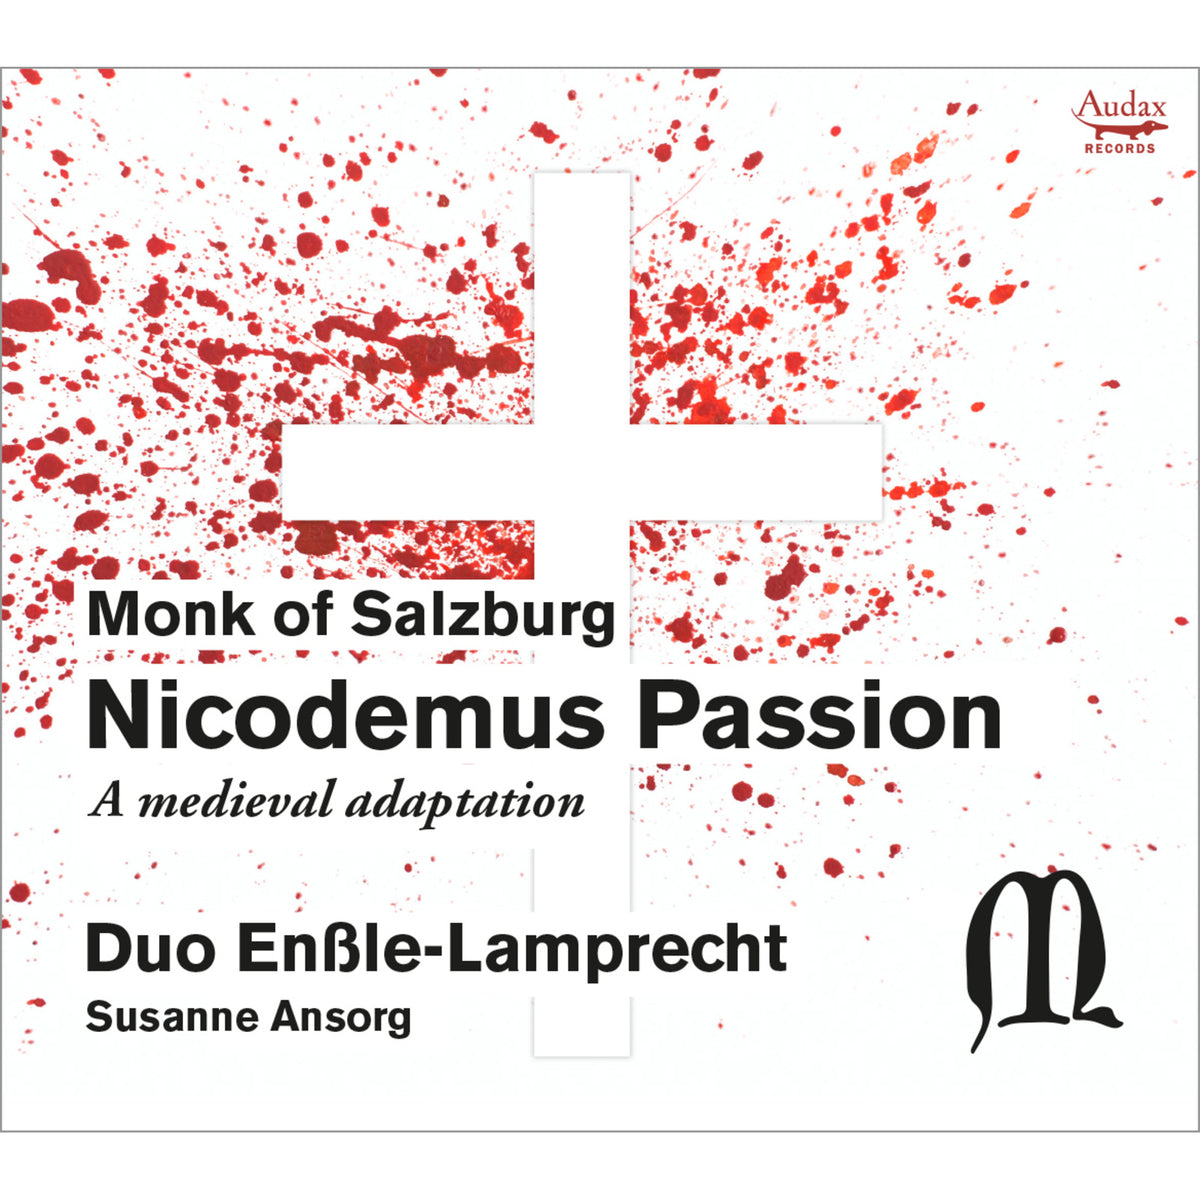 Duo Enssle-Lamprecht, Susanne Ansorg - Nicodemus Passion - A medieval adaptation - ADX11212